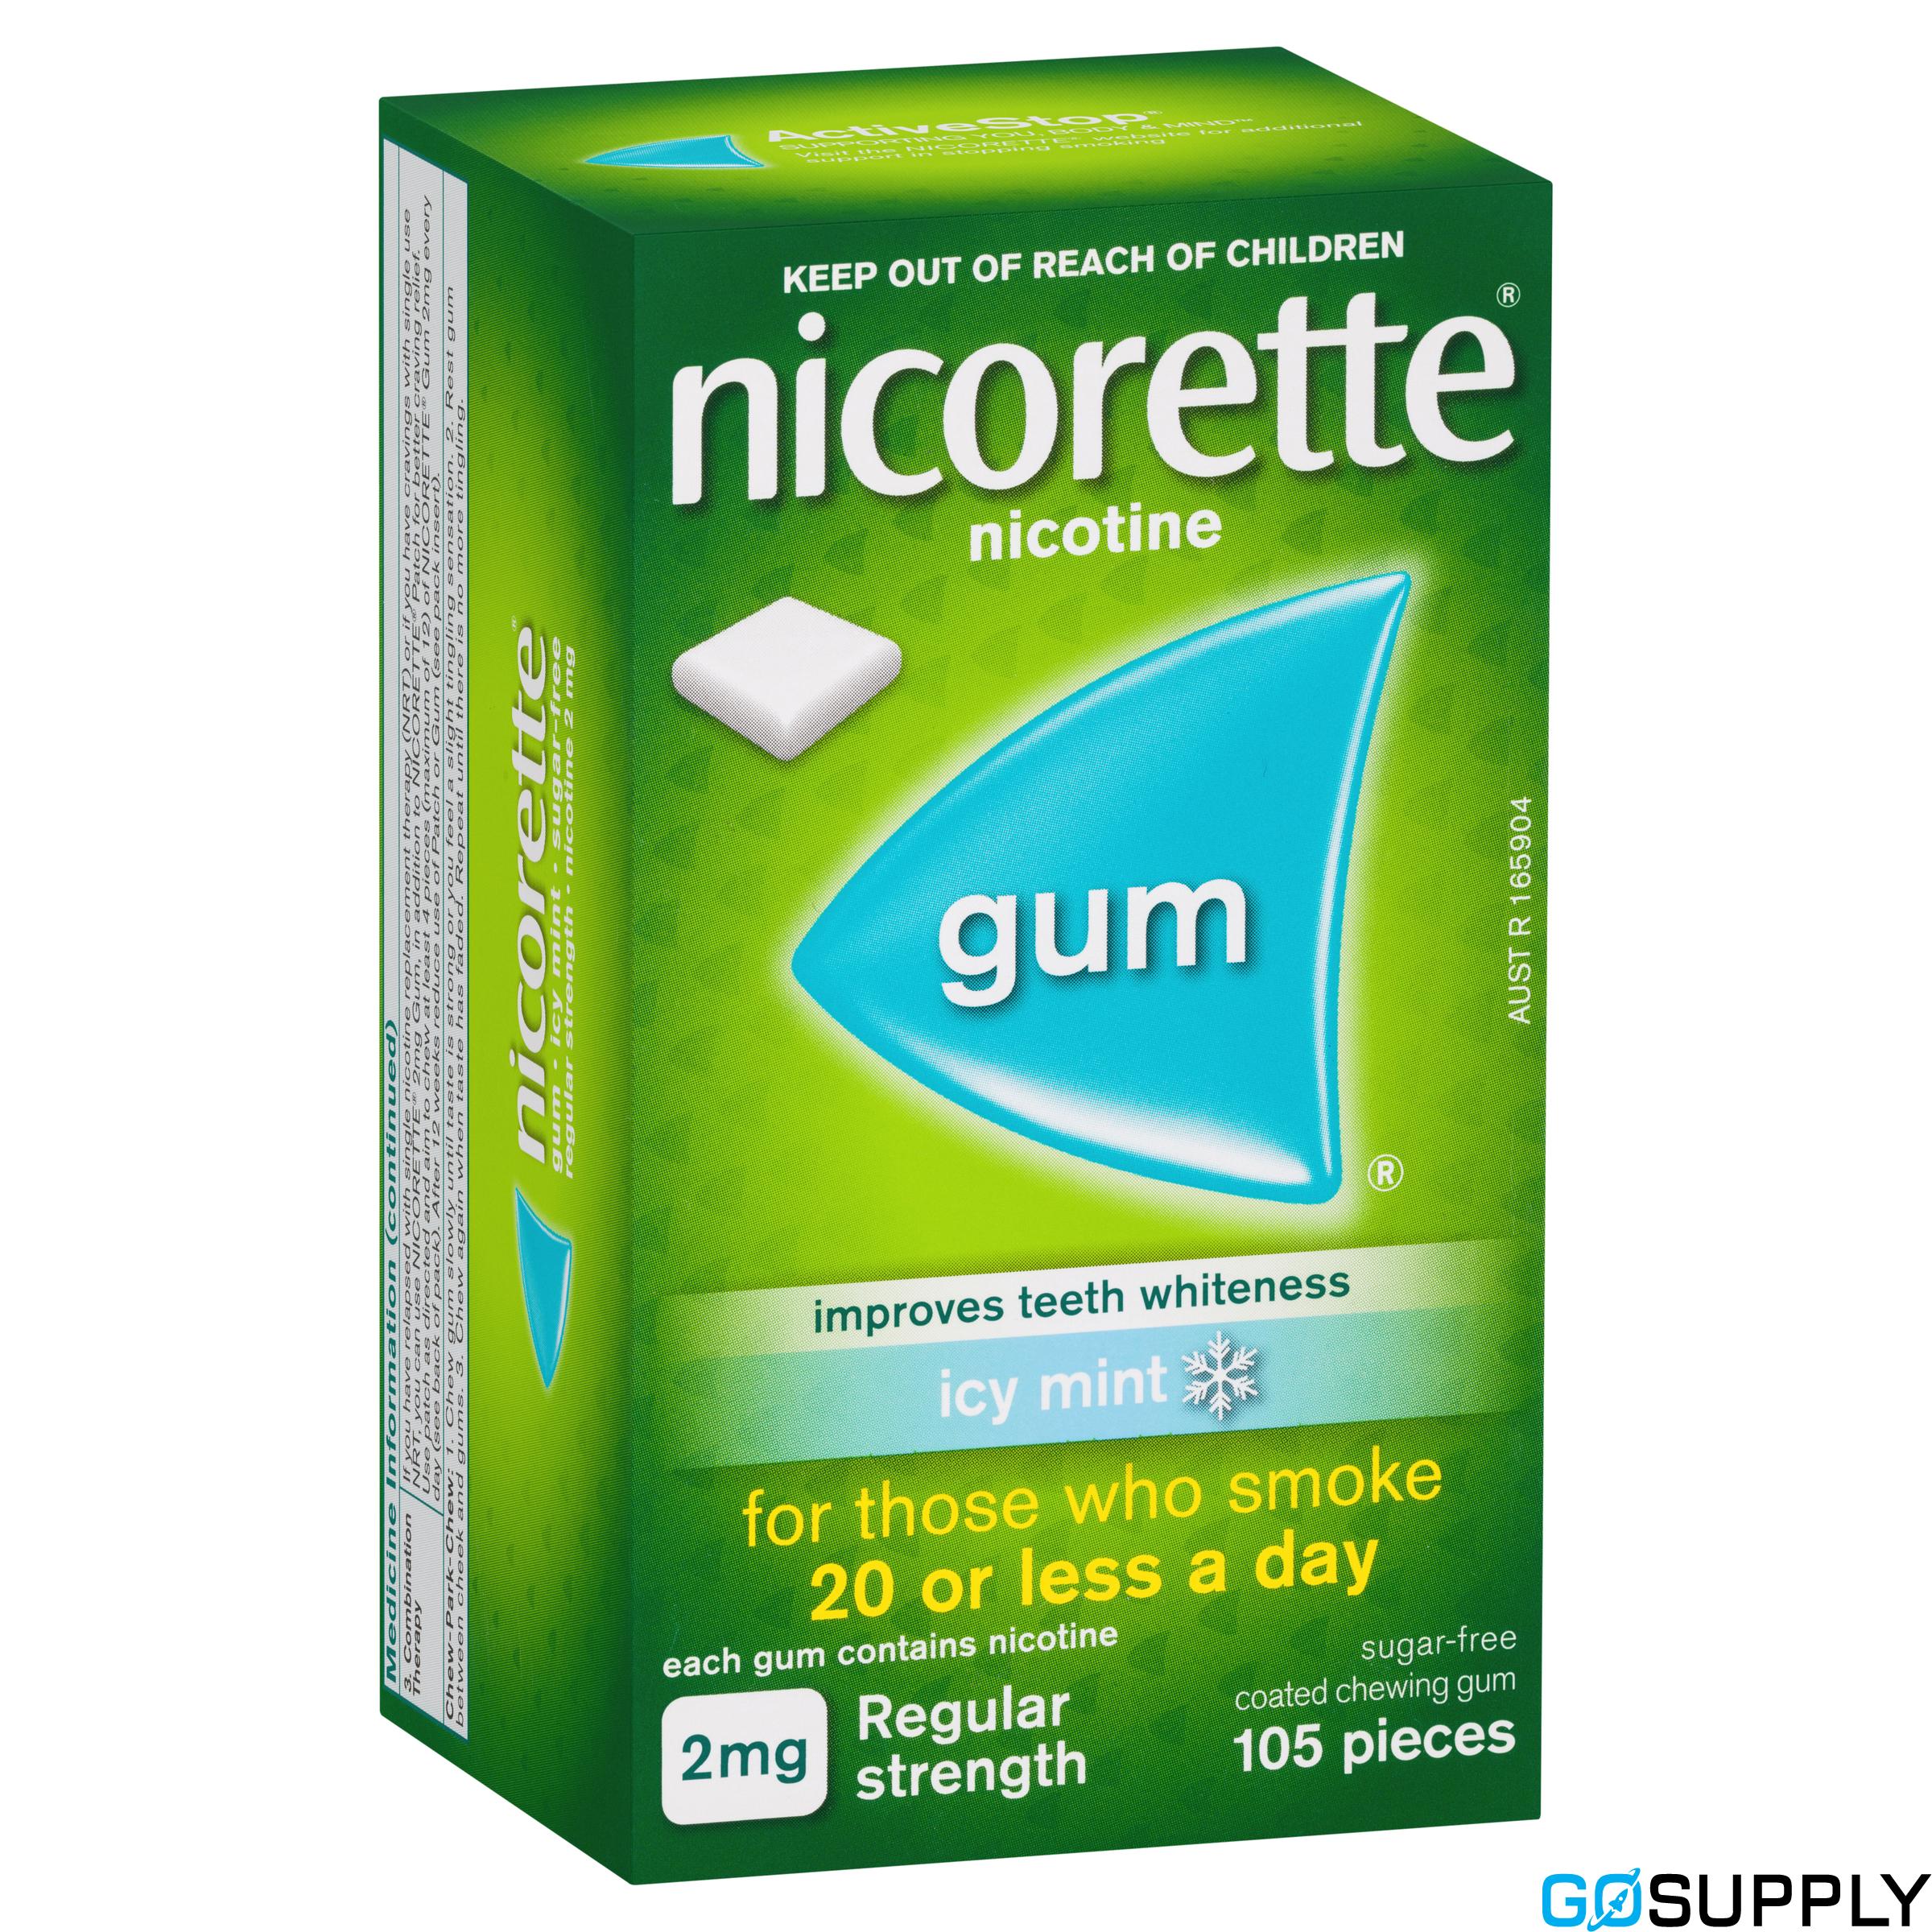 Nicorette Quit Smoking Nicotine Gum Icy Mint 2mg Regular Strength 105 Pack 2185